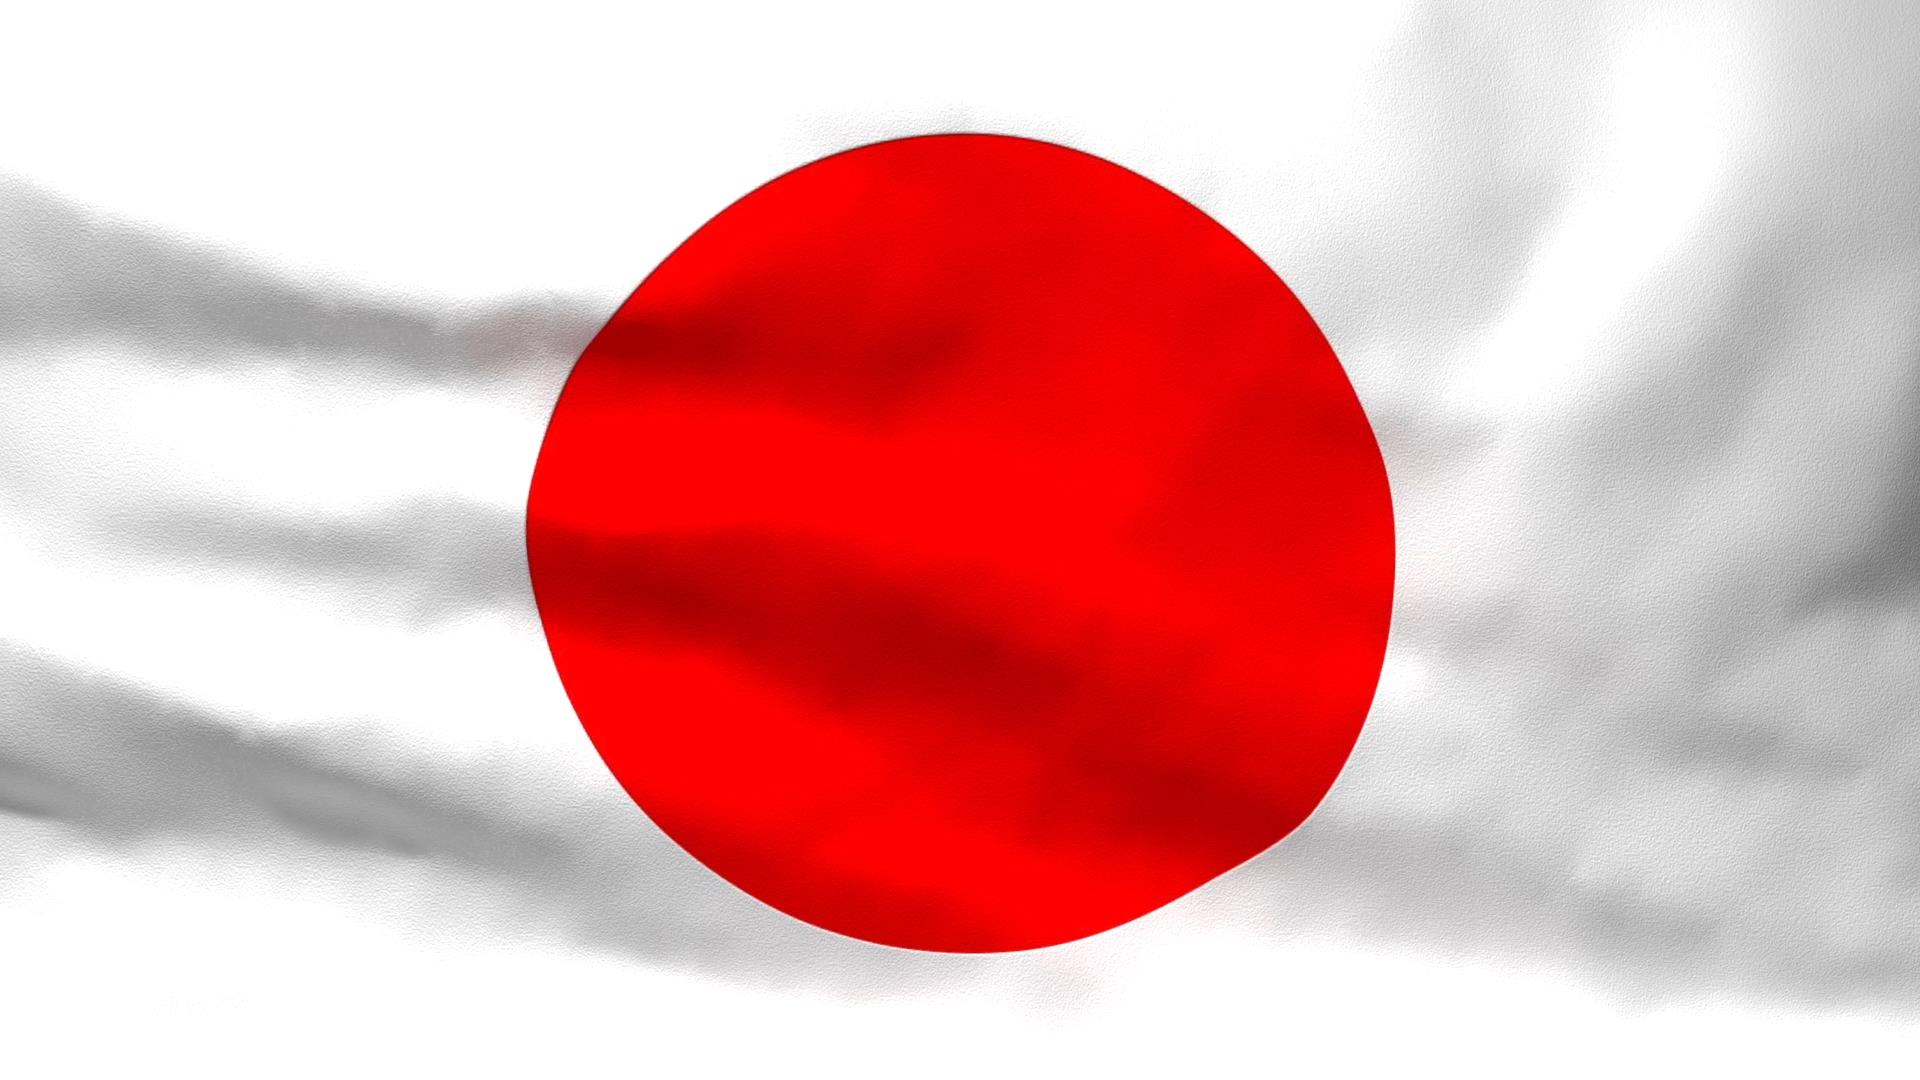 Lá cờ Nhật Bản: Lá cờ Nhật Bản được coi là một biểu tượng đại diện cho lòng trung thành và lòng tự hào của người Nhật. Năm 2024 này sẽ là một năm đặc biệt, với sự kiện lớn Tokyo Olympic diễn ra, lá cờ Nhật Bản trở nên phổ biến hơn bao giờ hết. Cùng xem những hình ảnh đẹp về lá cờ này, để cảm nhận được nét đẹp văn hóa và truyền thống của Nhật Bản.